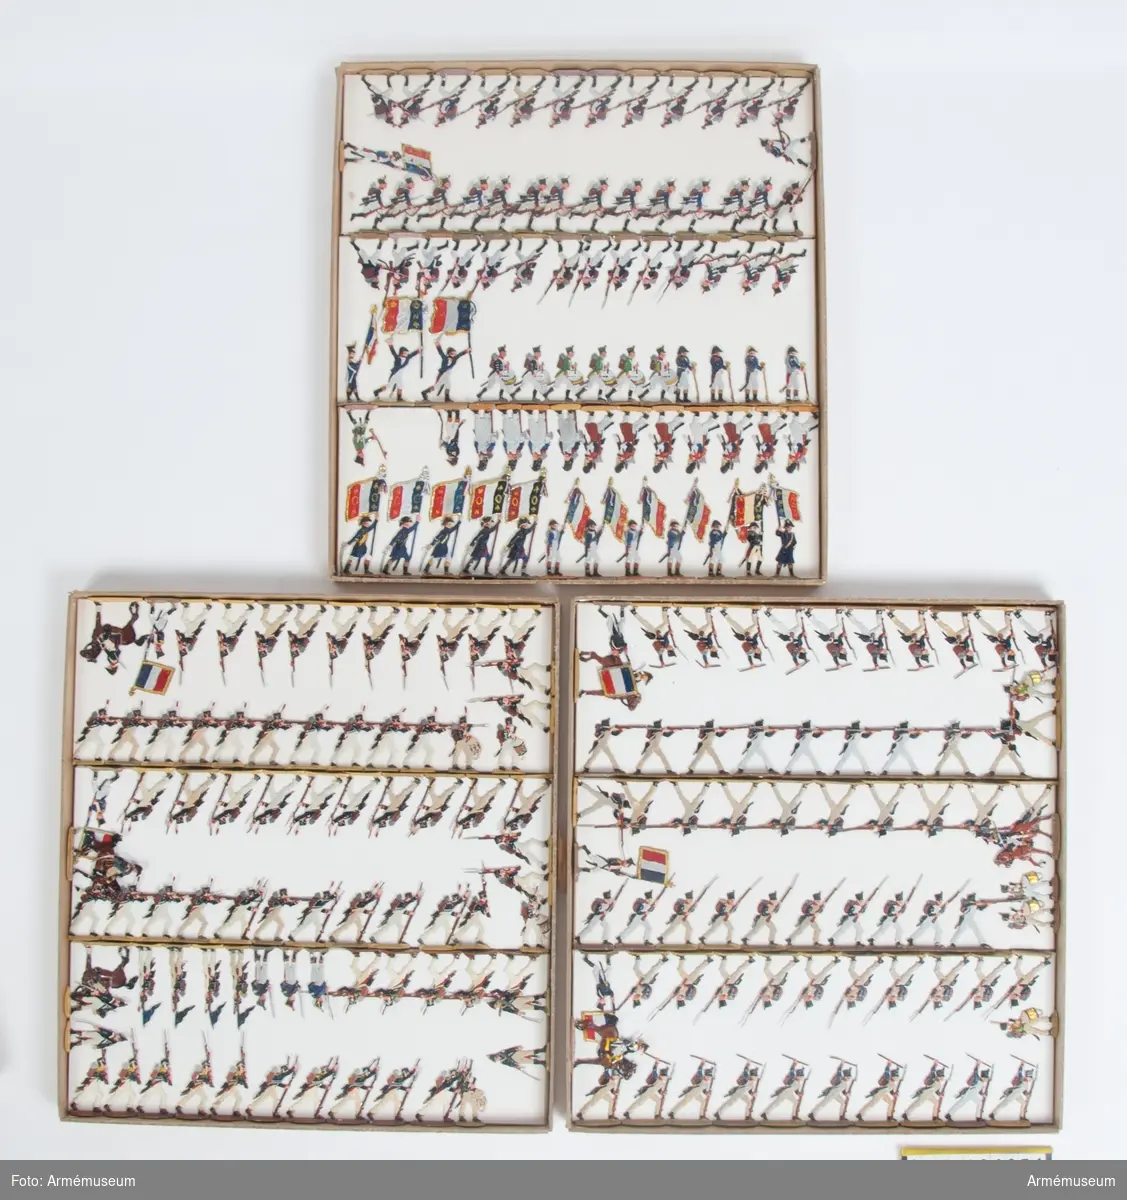 Infanteri från Frankrike från Napoleonkrigen.
Tre lådor med figurer.
Fabriksmålade.